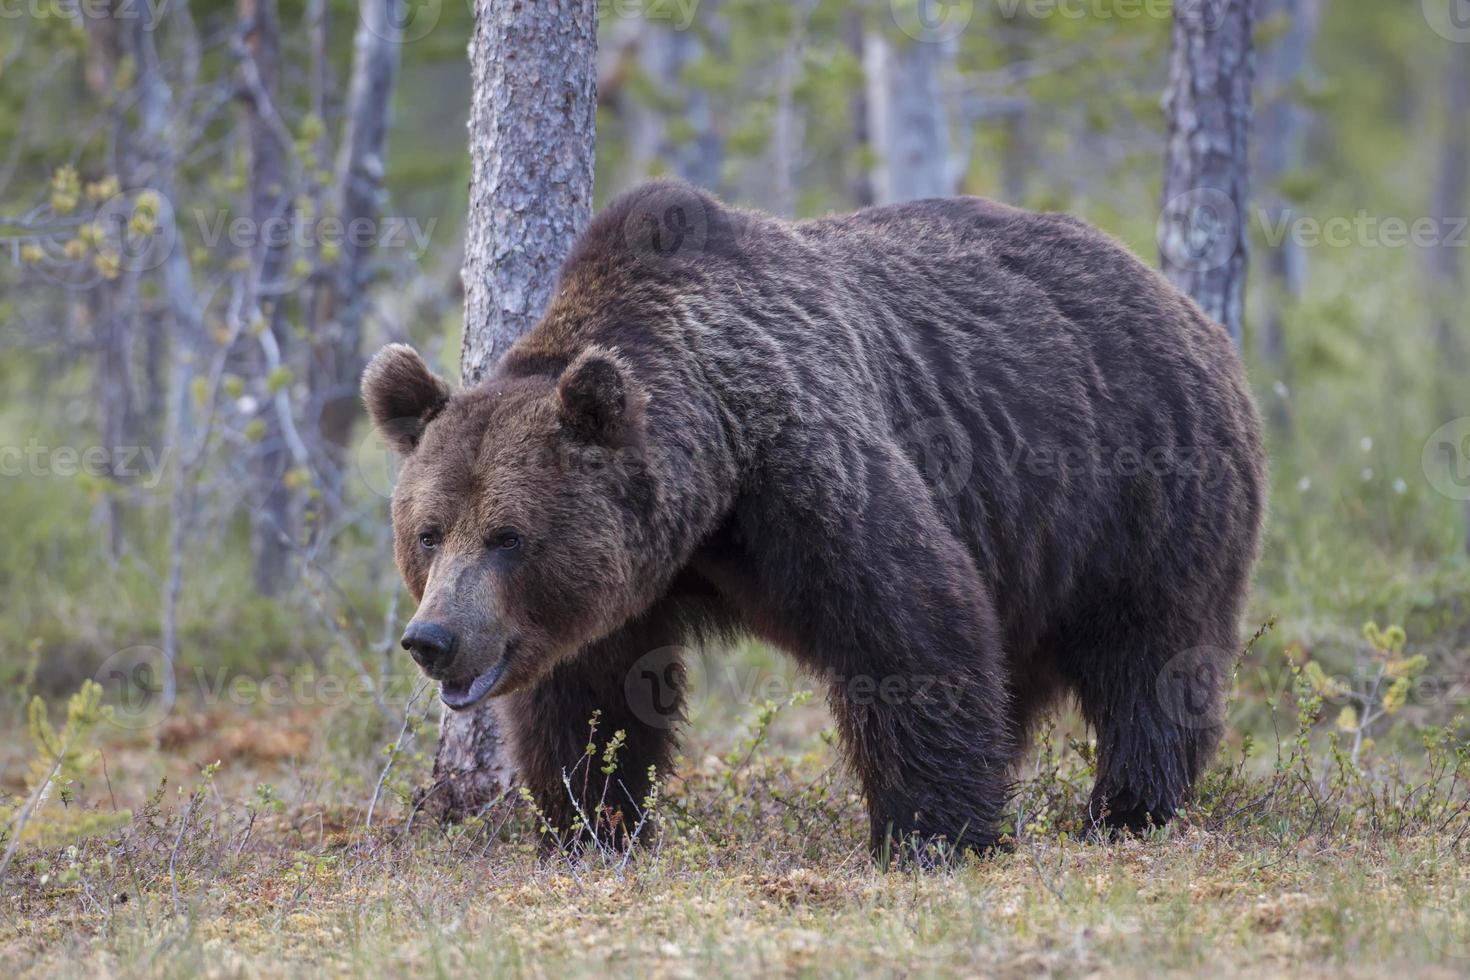 braunbaer, ursus arctos, bruine beer, op zoek naar voedsel foto